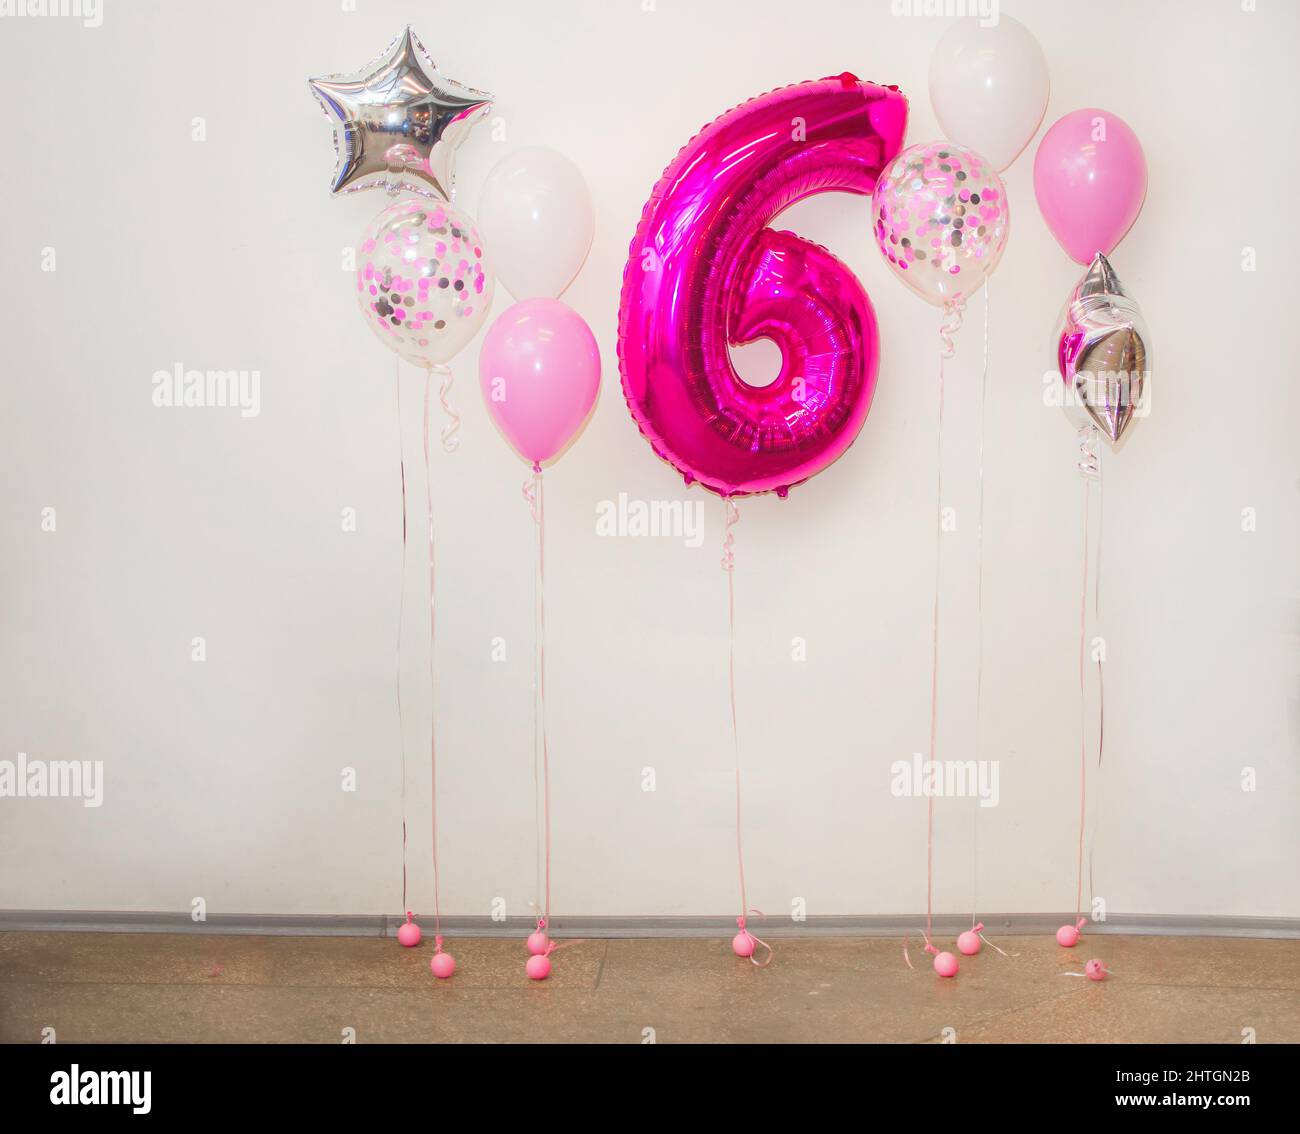 Felicitaciones por la celebración del sexto aniversario de su nacimiento. Número 6 globo y globos de color rosa metalizado. Feliz cumpleaños, póster de saludo. Foto de stock